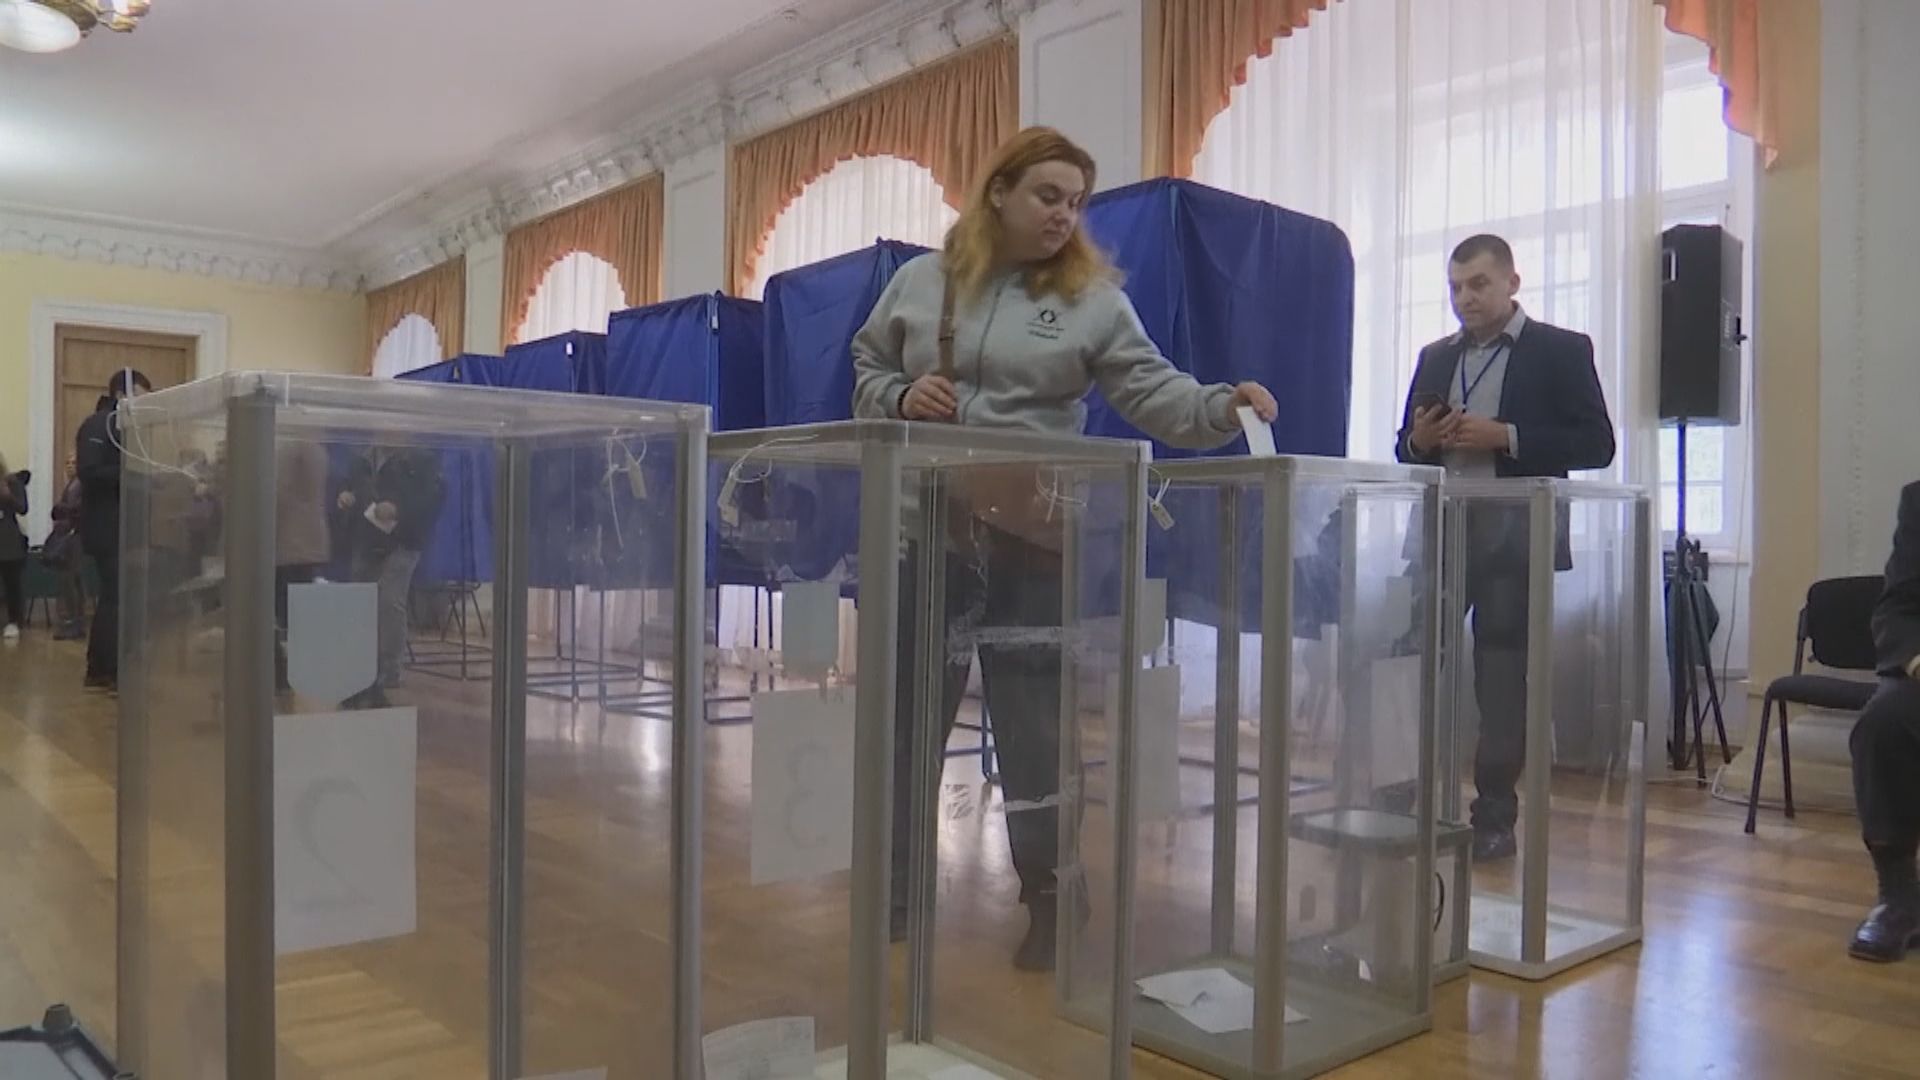 烏克蘭總統選舉　民調指喜劇演員有望擊敗現任總統